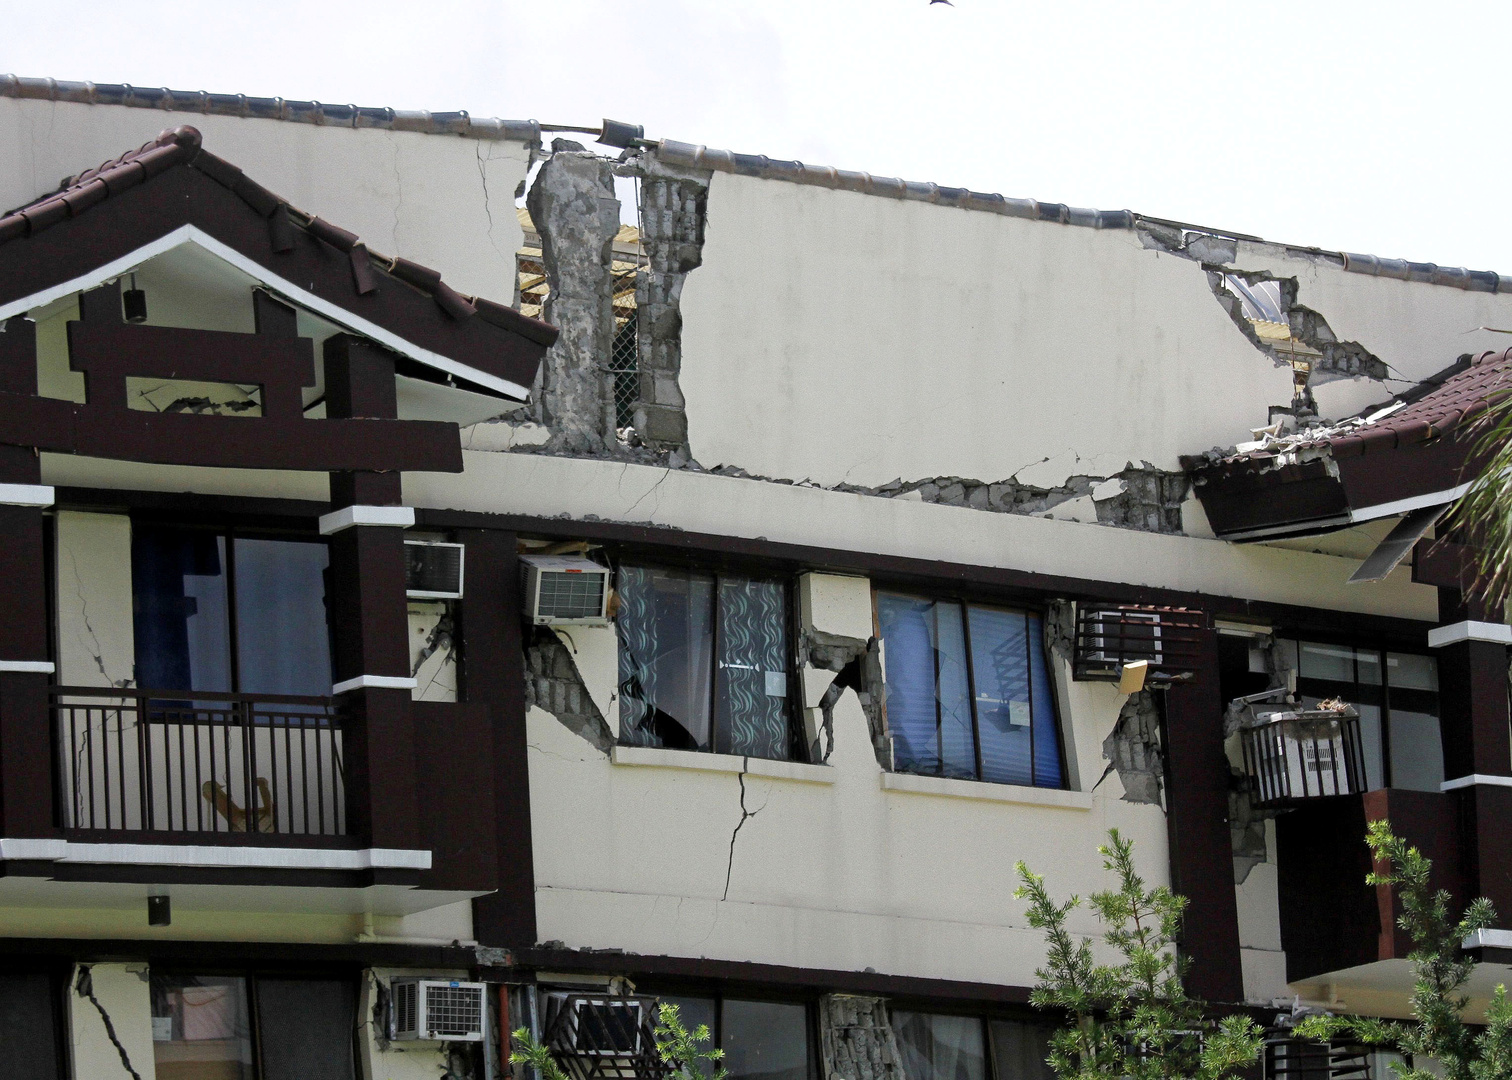 زلزال بقوة 6.1 درجة يضرب الفلبين